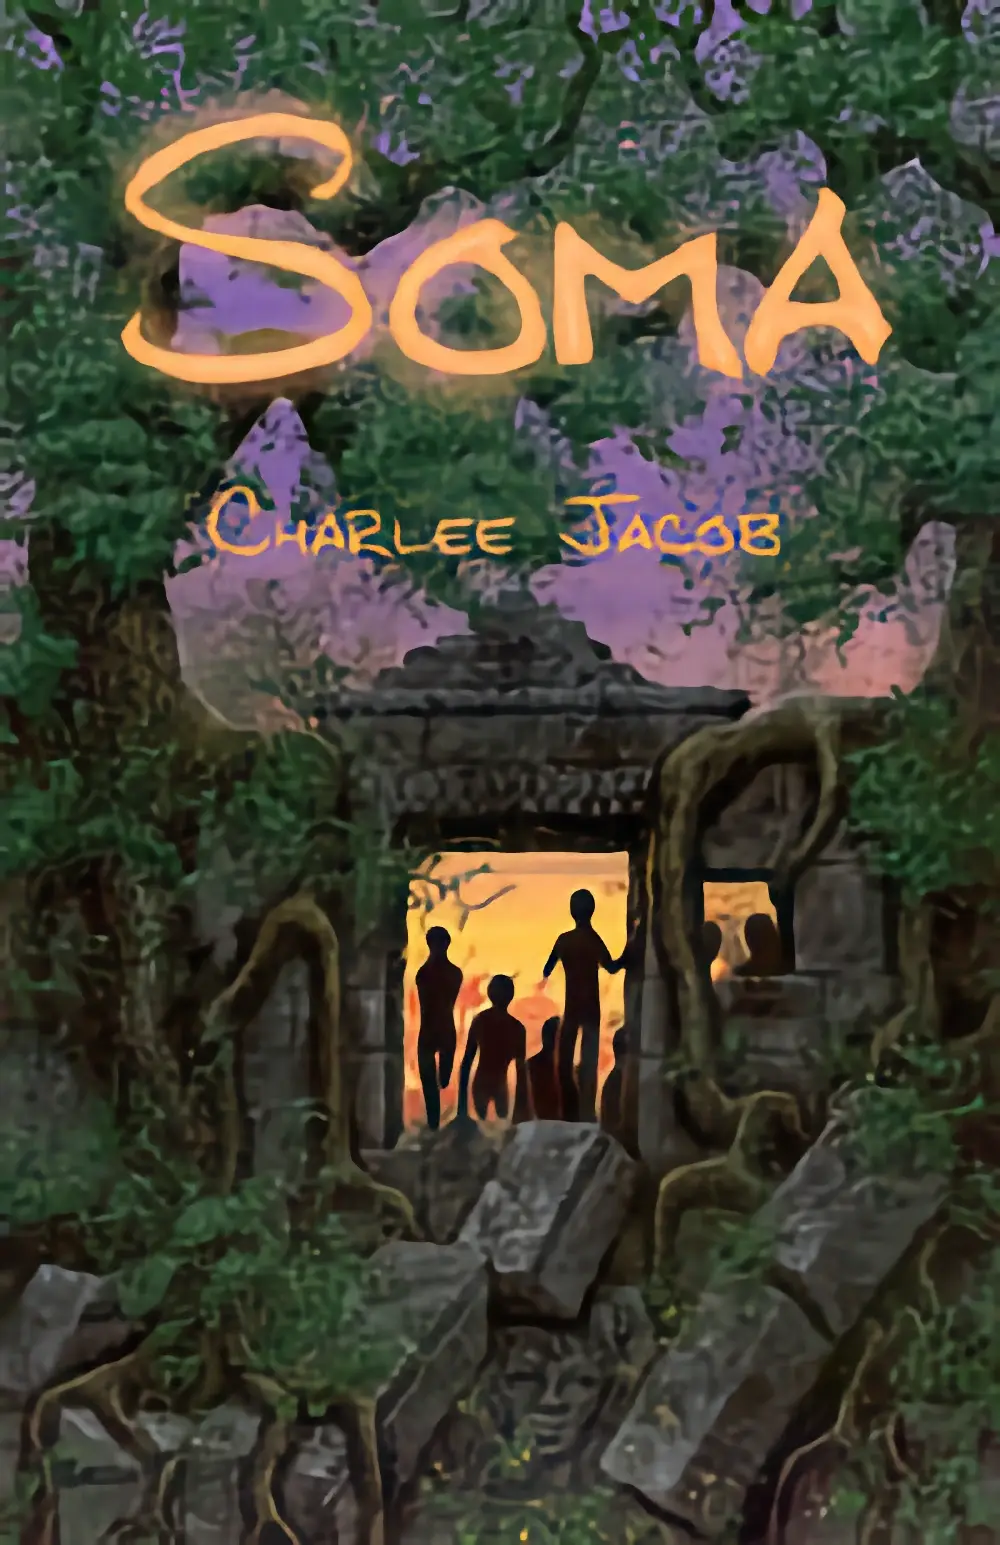 Soma by Charlee Jacob